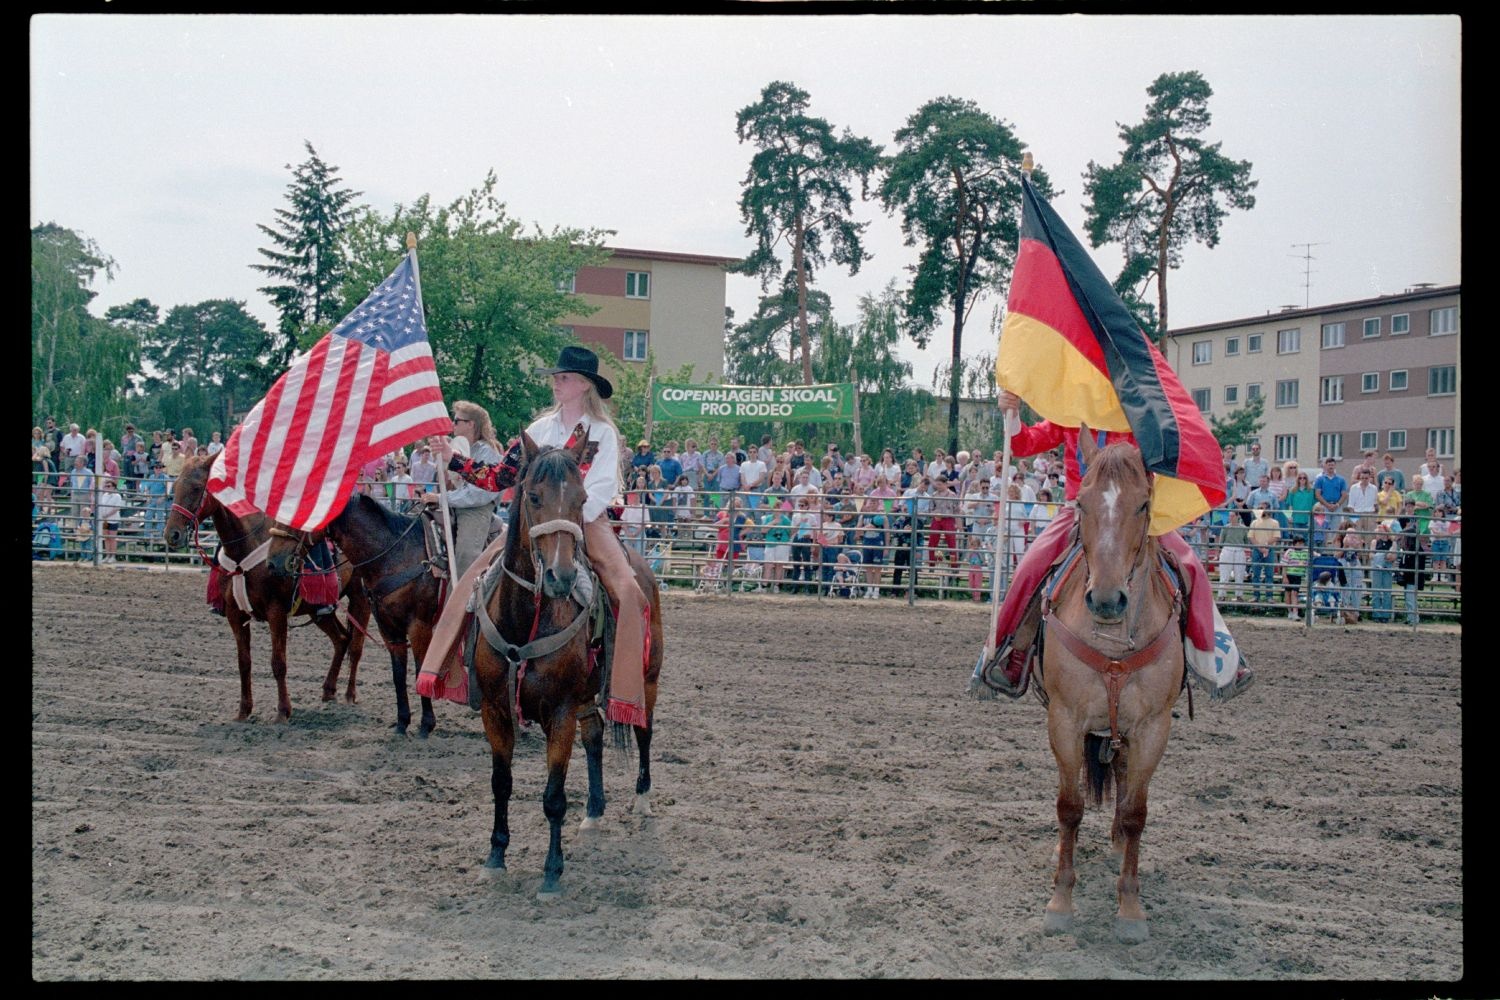 Fotografie: Rodeo Mania 1993 auf dem Festplatz Deutsch-Amerikanisches Volksfest in Berlin-Dahlem (AlliiertenMuseum/U.S. Army Photograph Public Domain Mark)